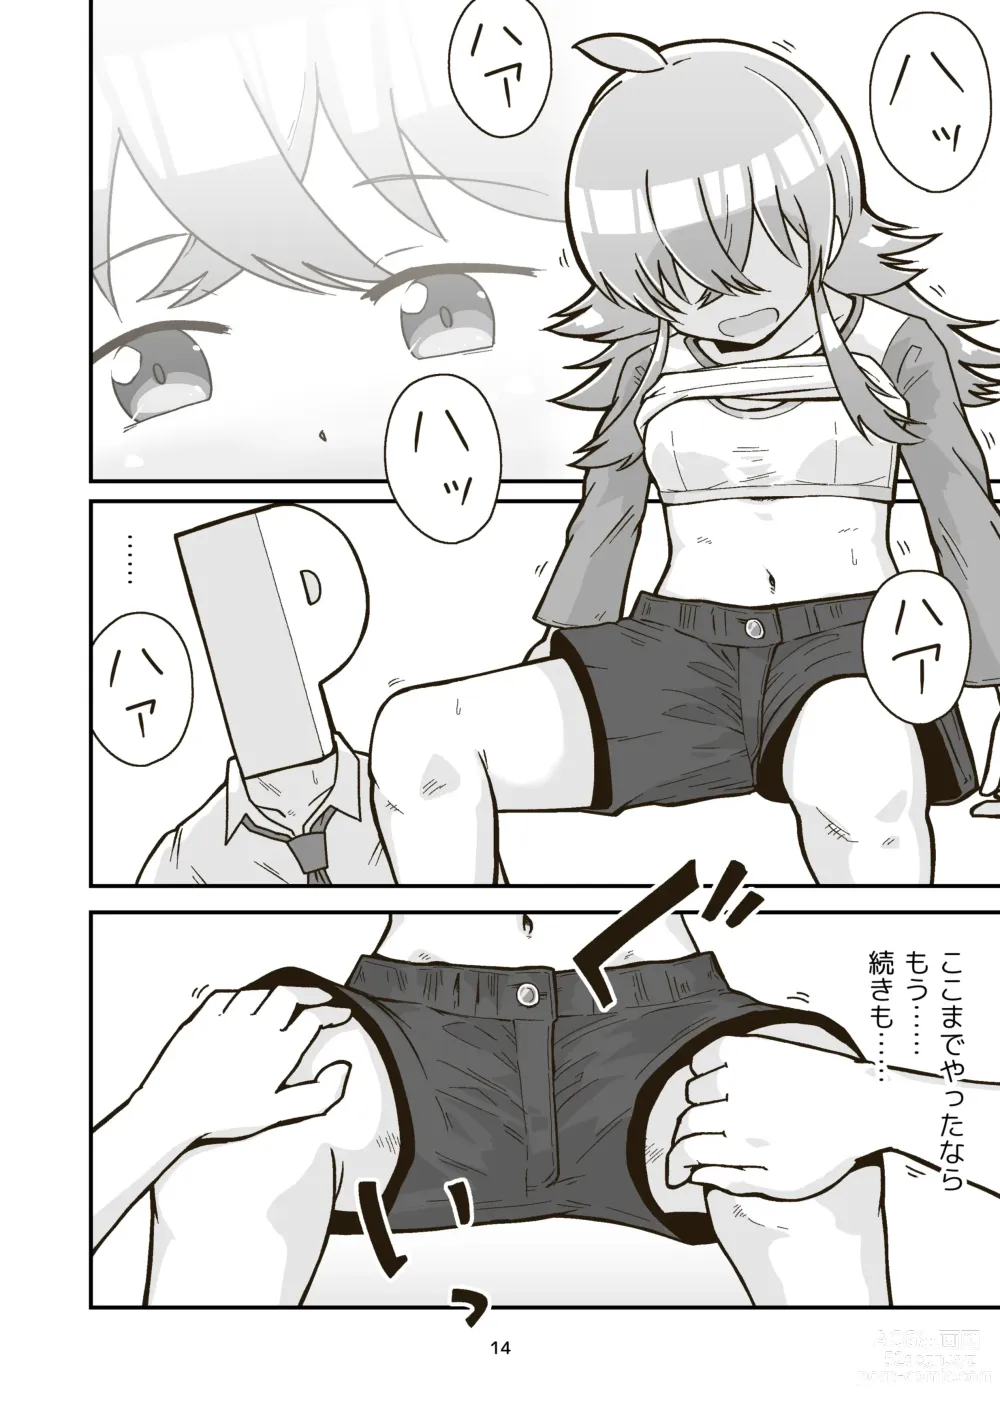 Page 13 of doujinshi Nichiyou Asa kara Climax